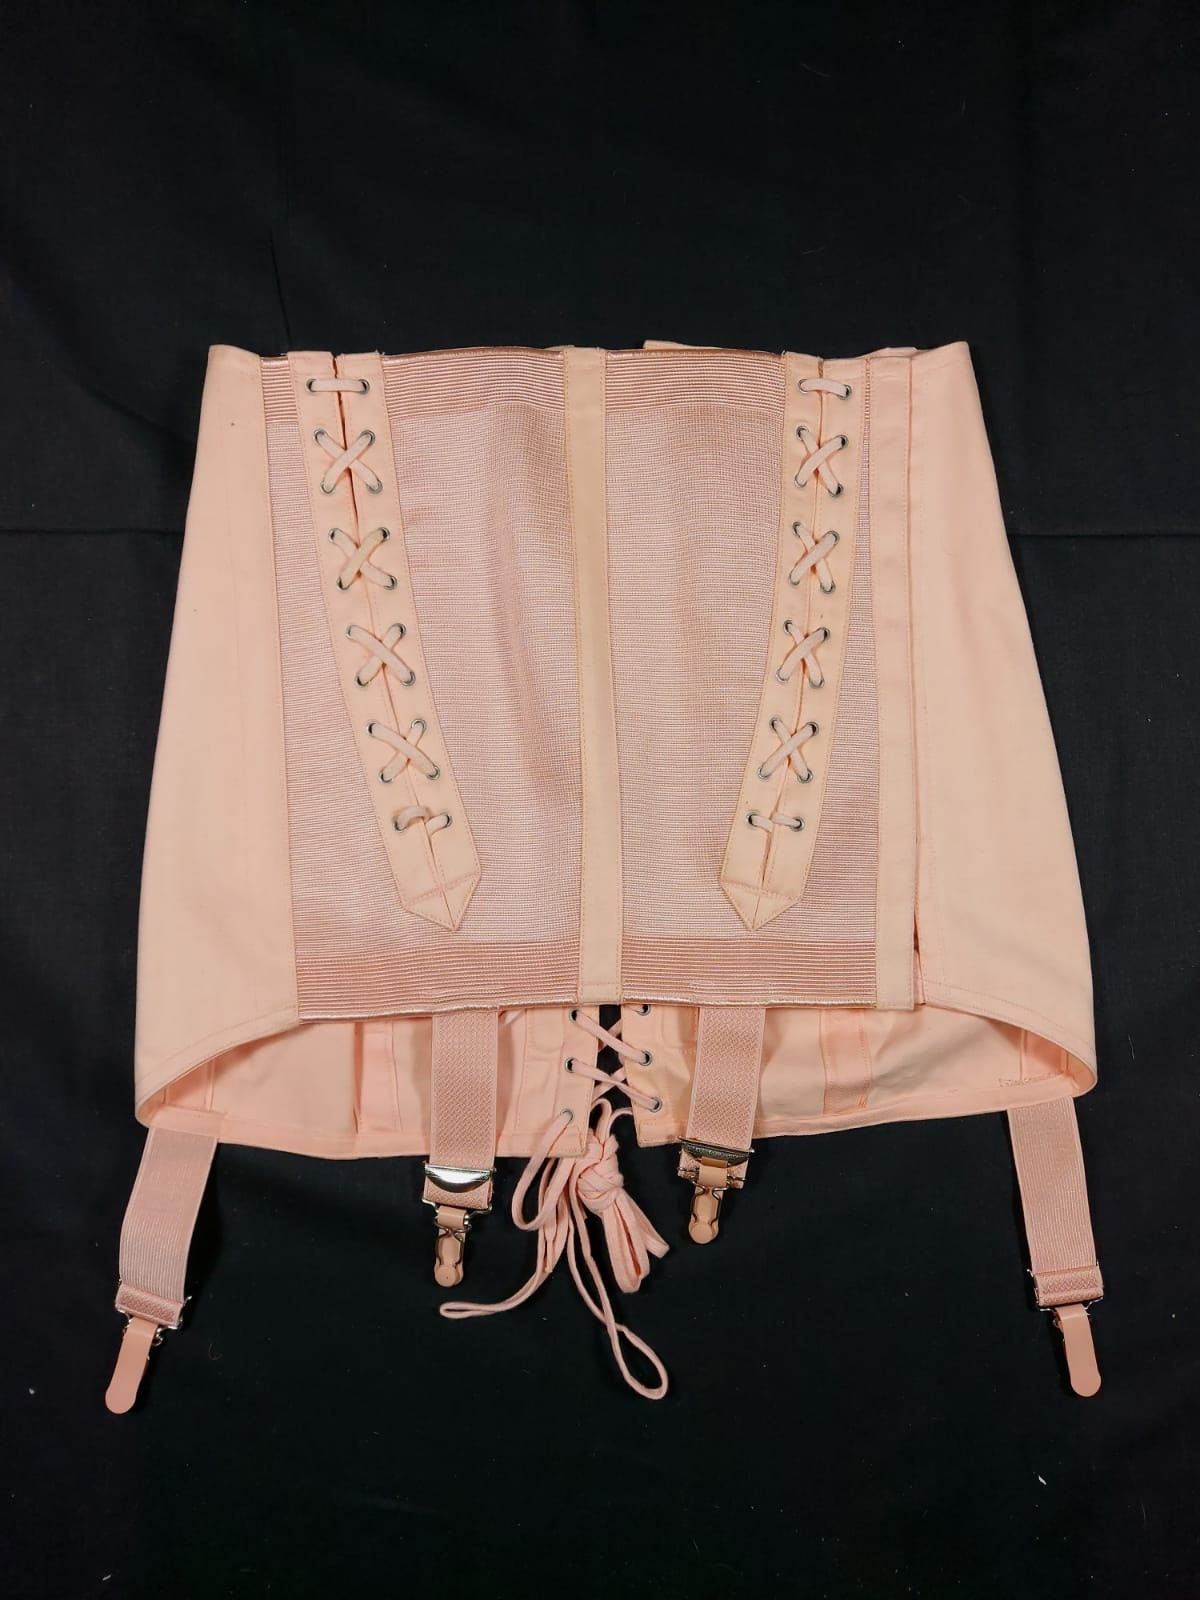 Authentic vintage Wonderbra bustier corset Size 34b - Depop